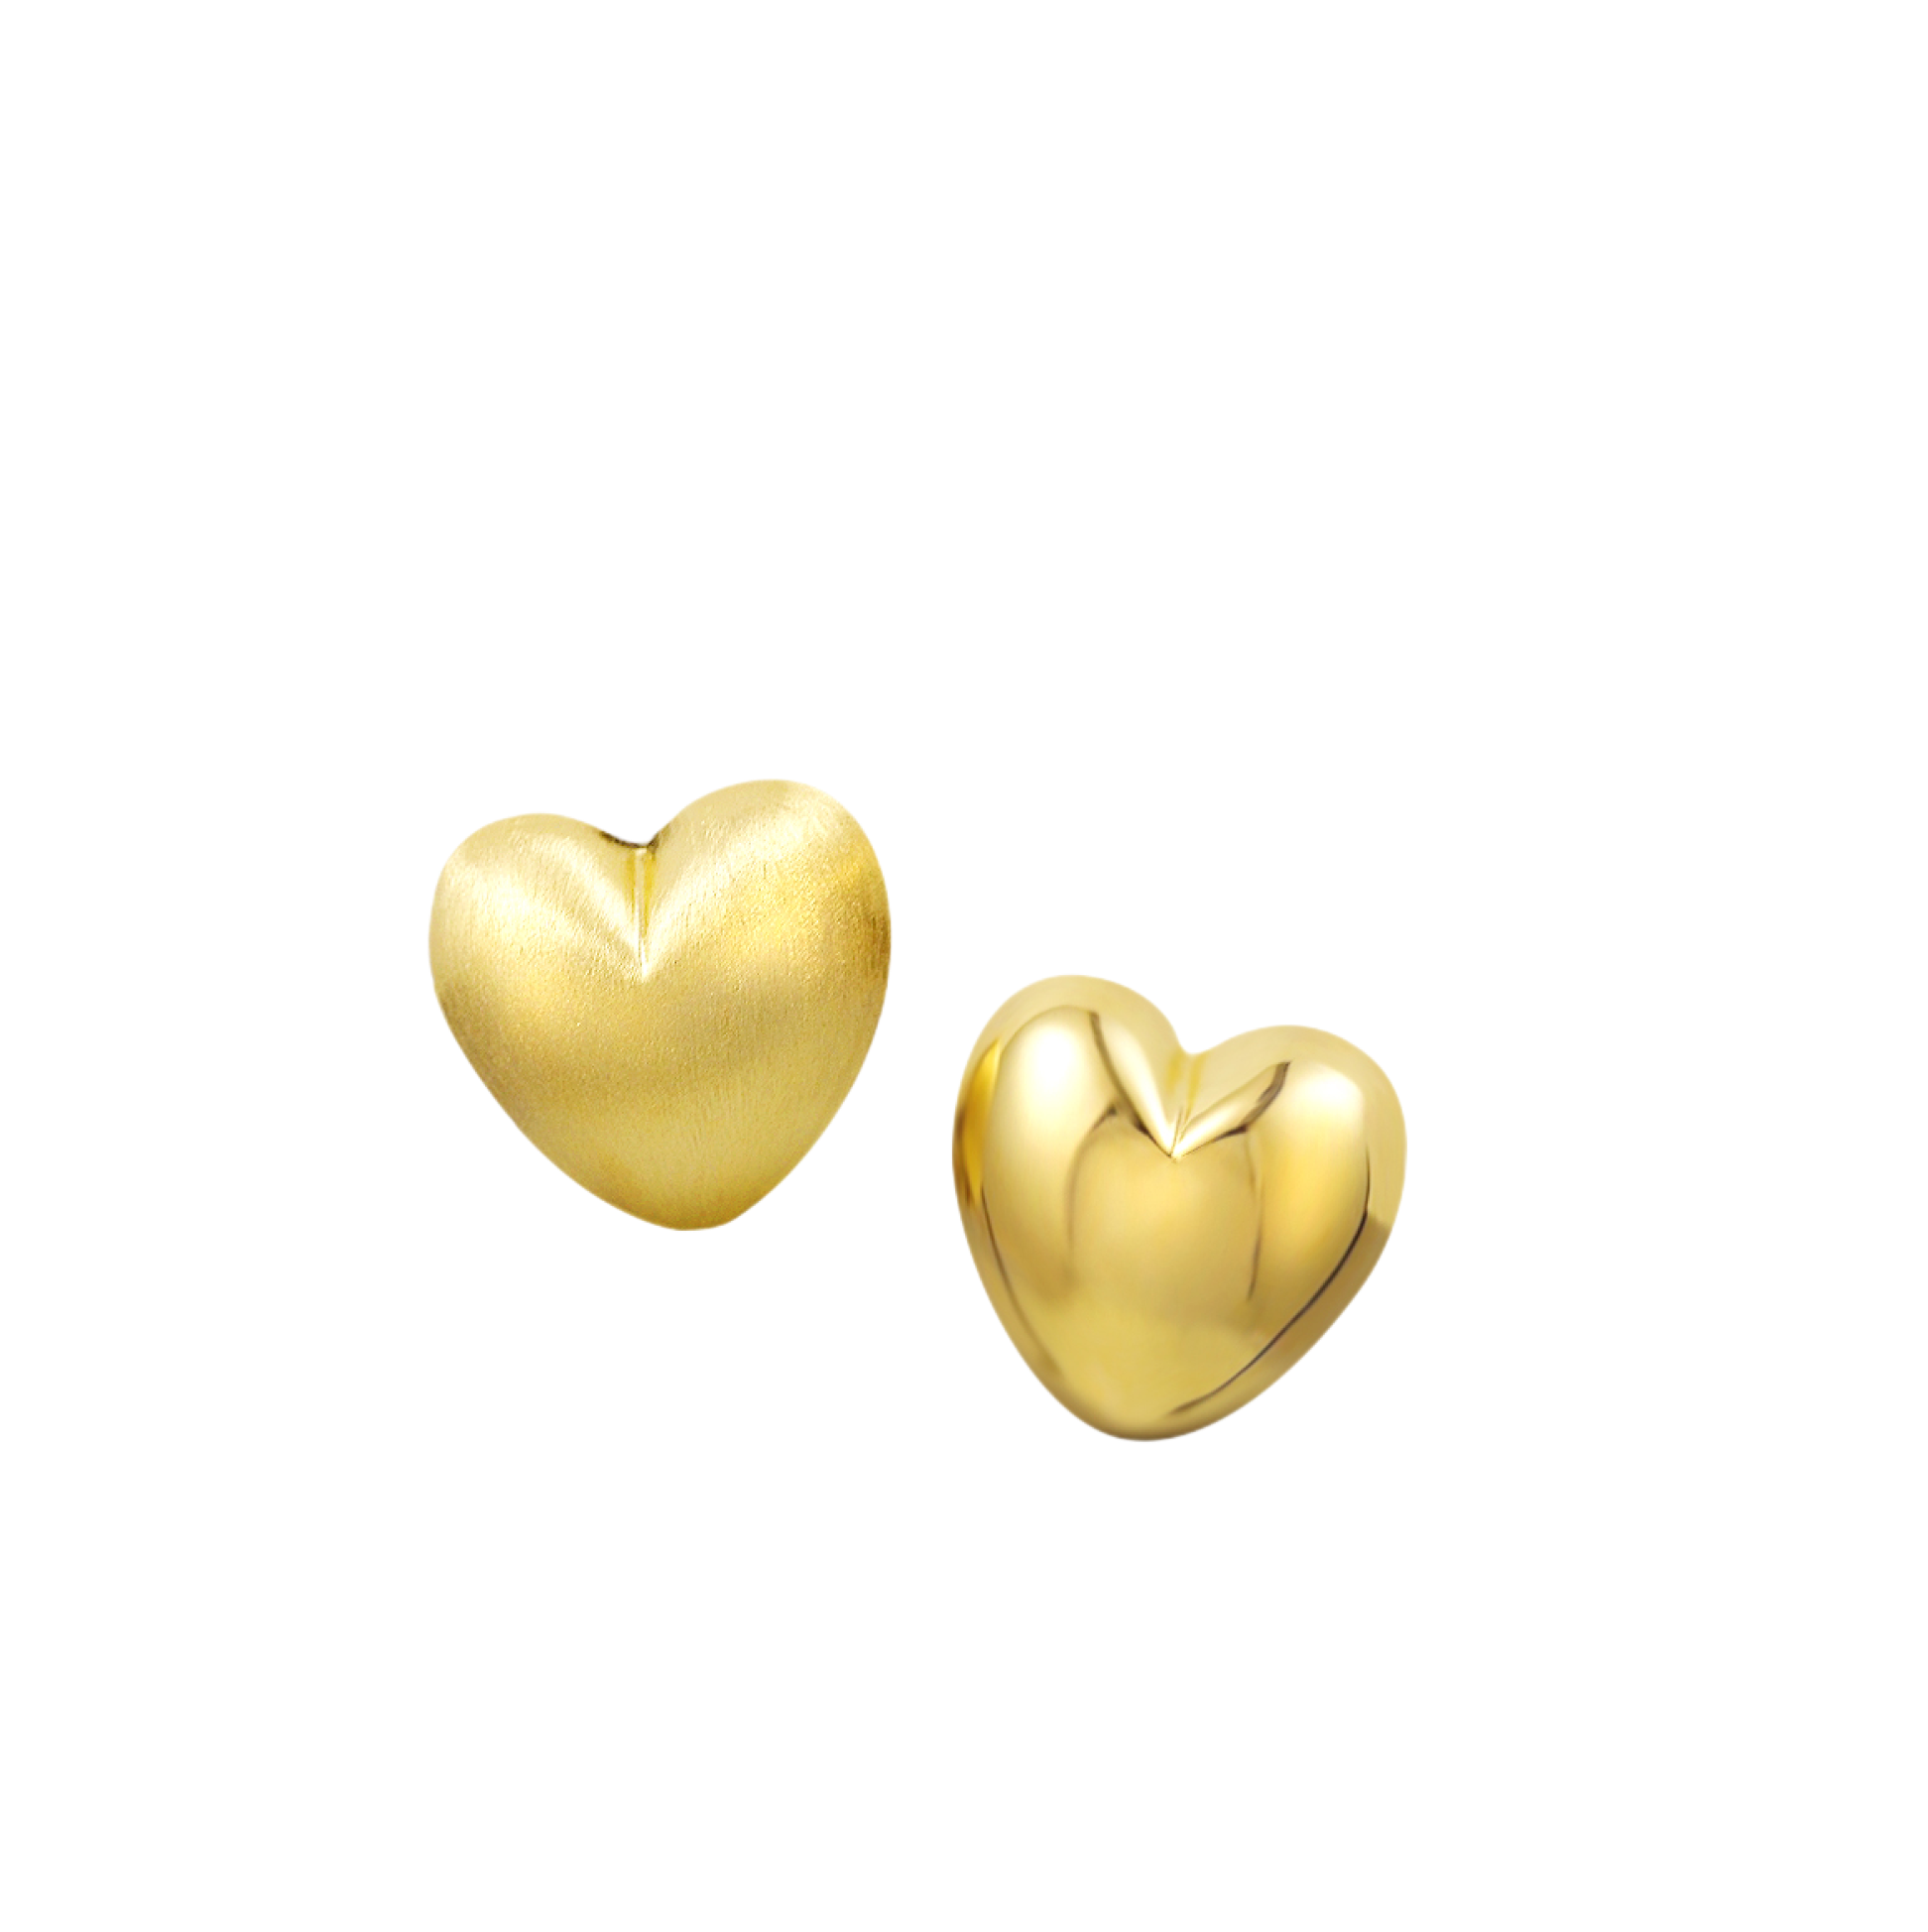 gold double side heart earrings